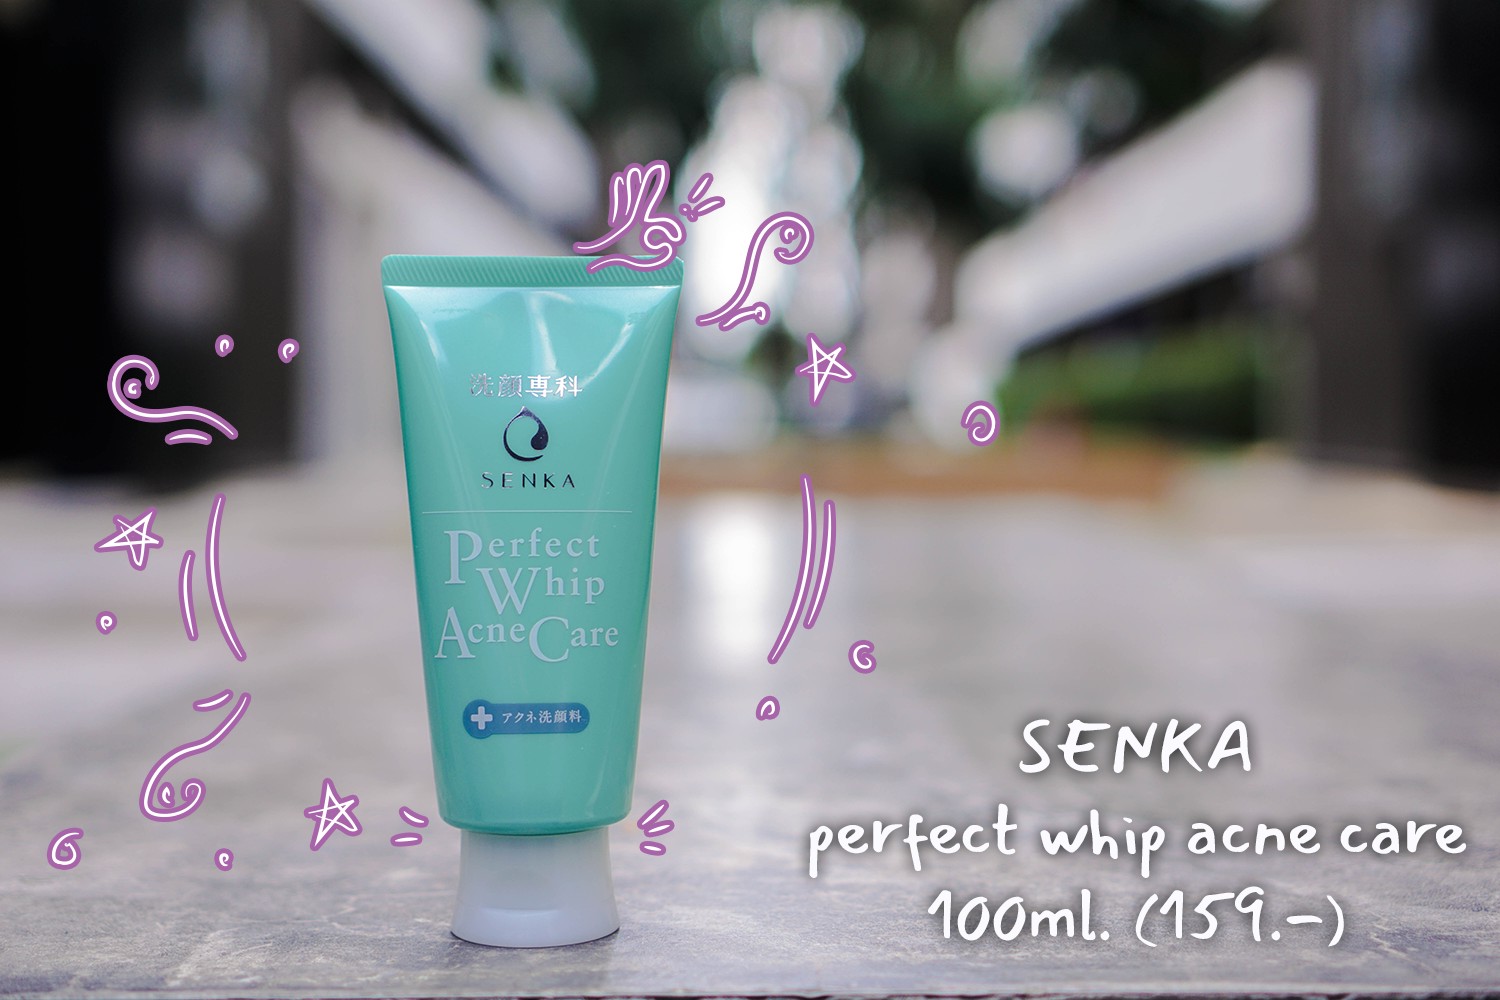 Senka Perfect Whip Acne Care Skincarisma